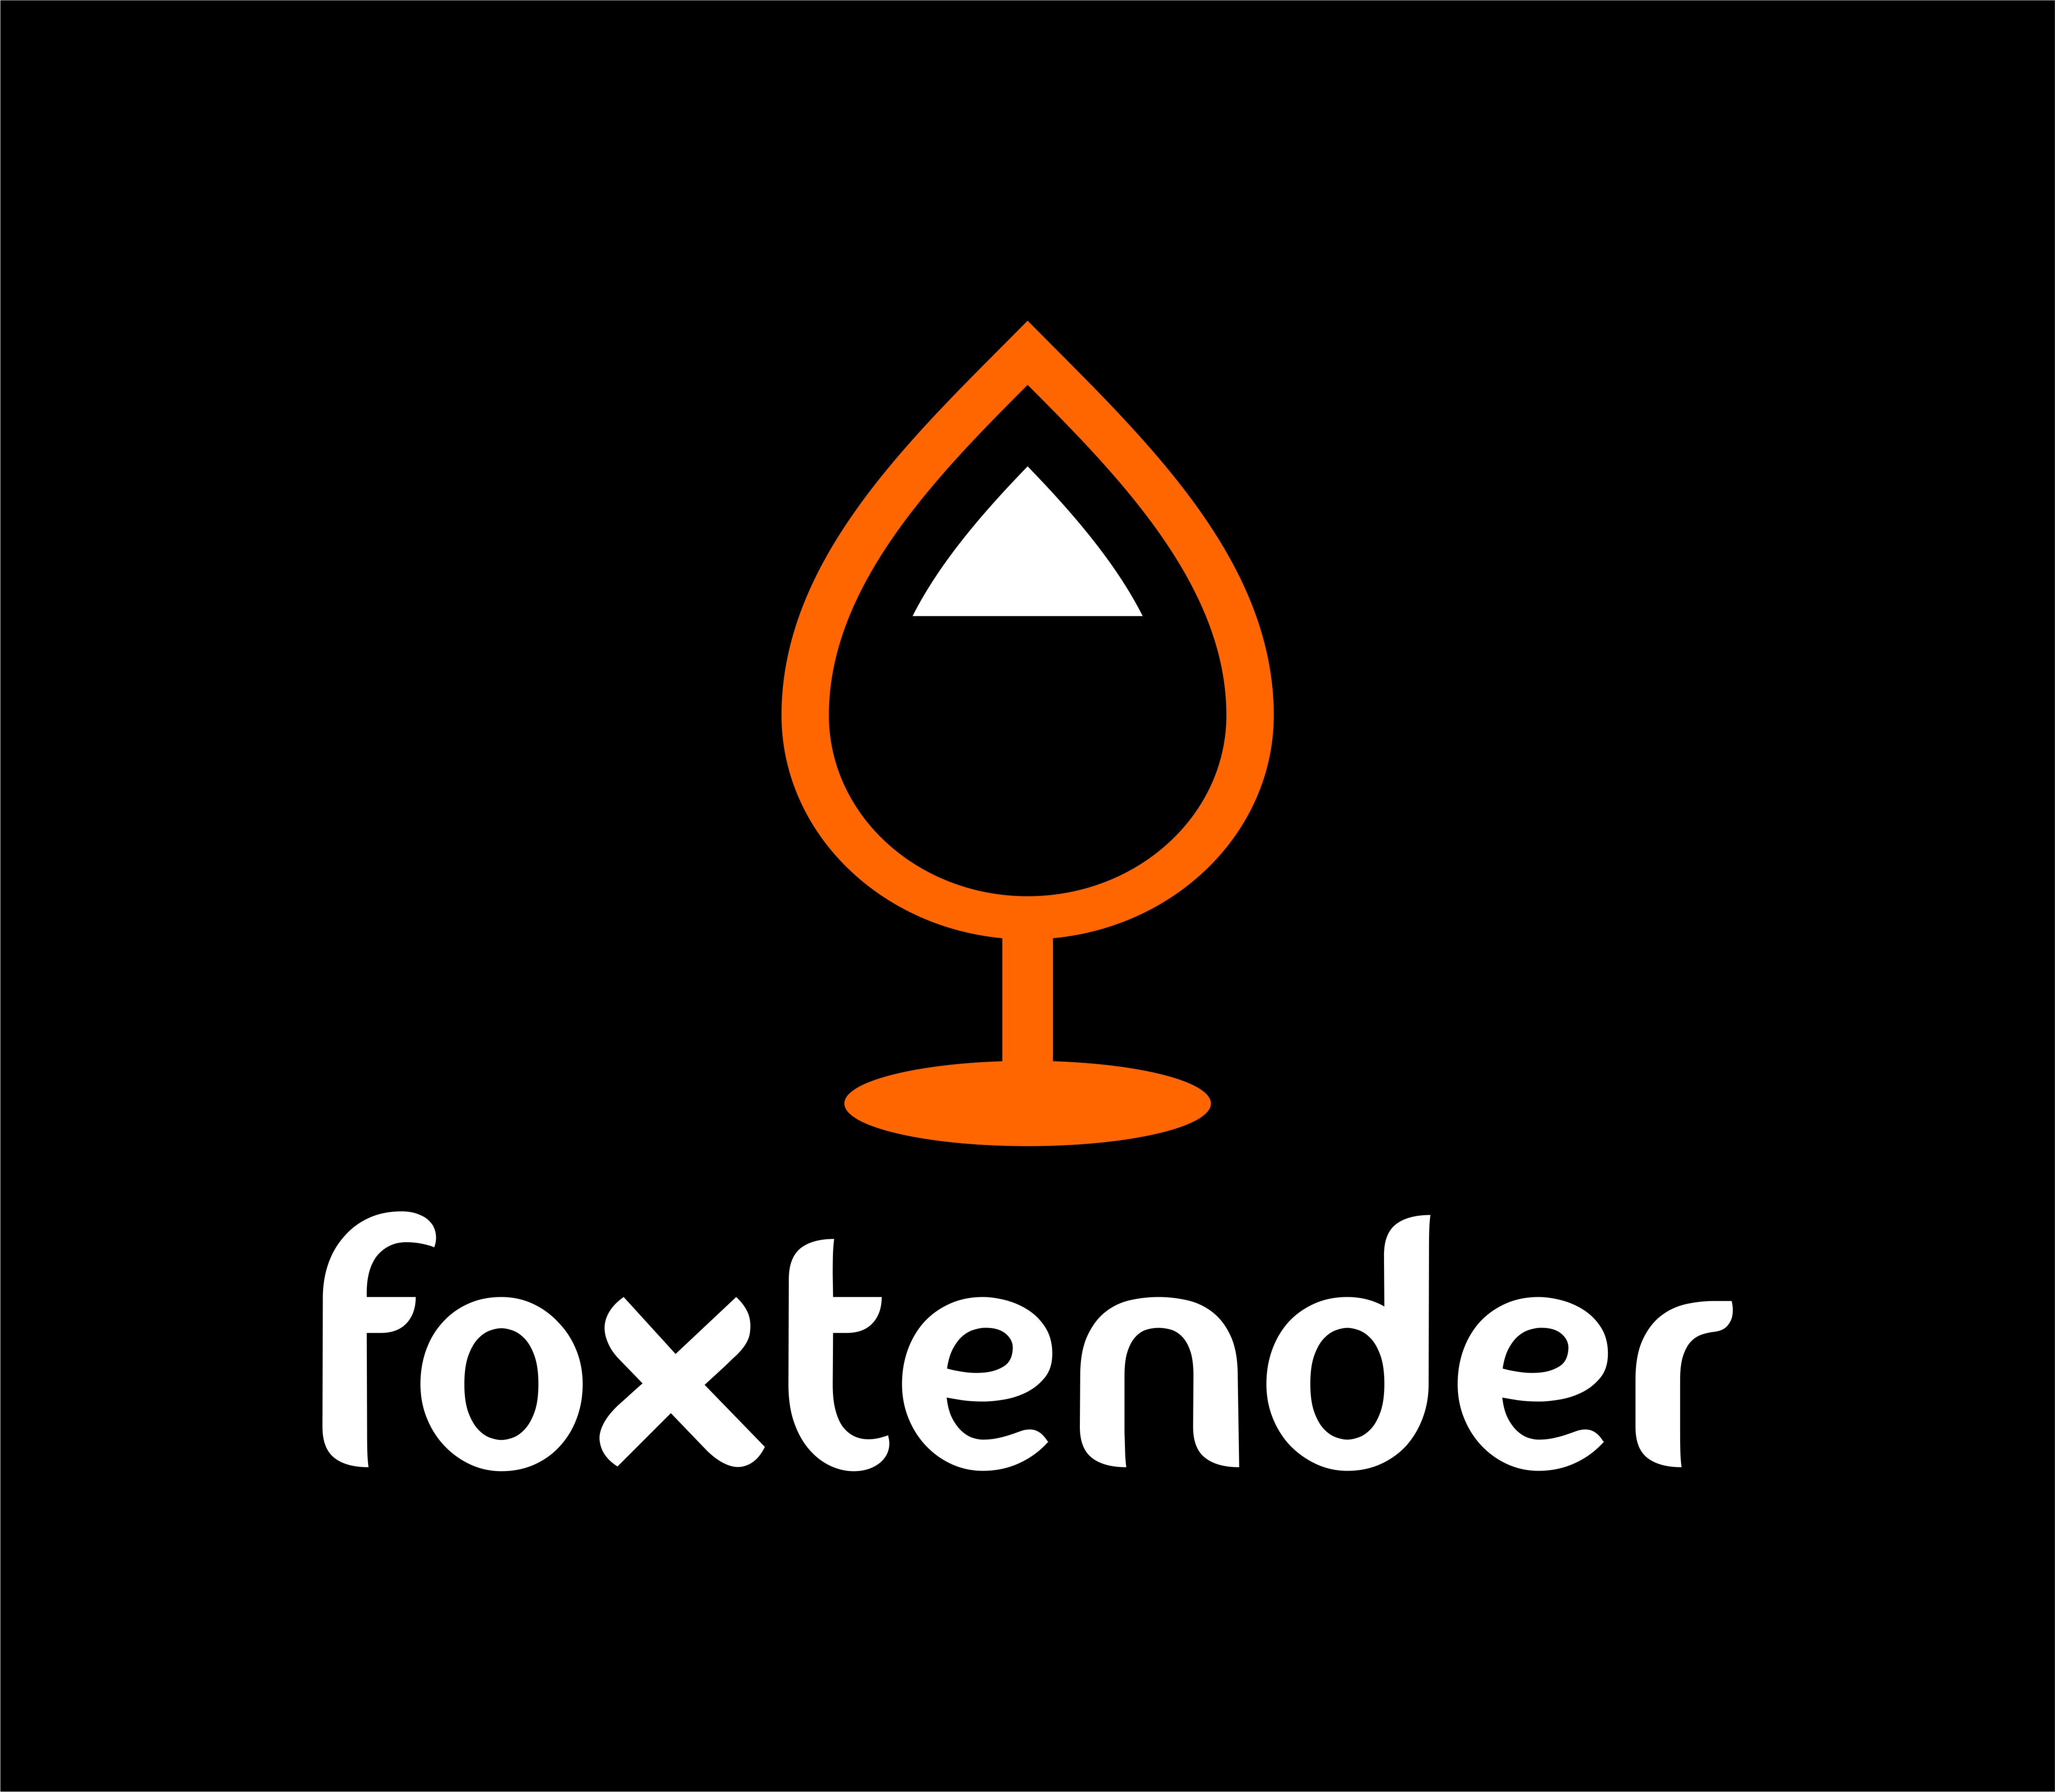 Foxtender Announces Kickstarter Offering the World's First